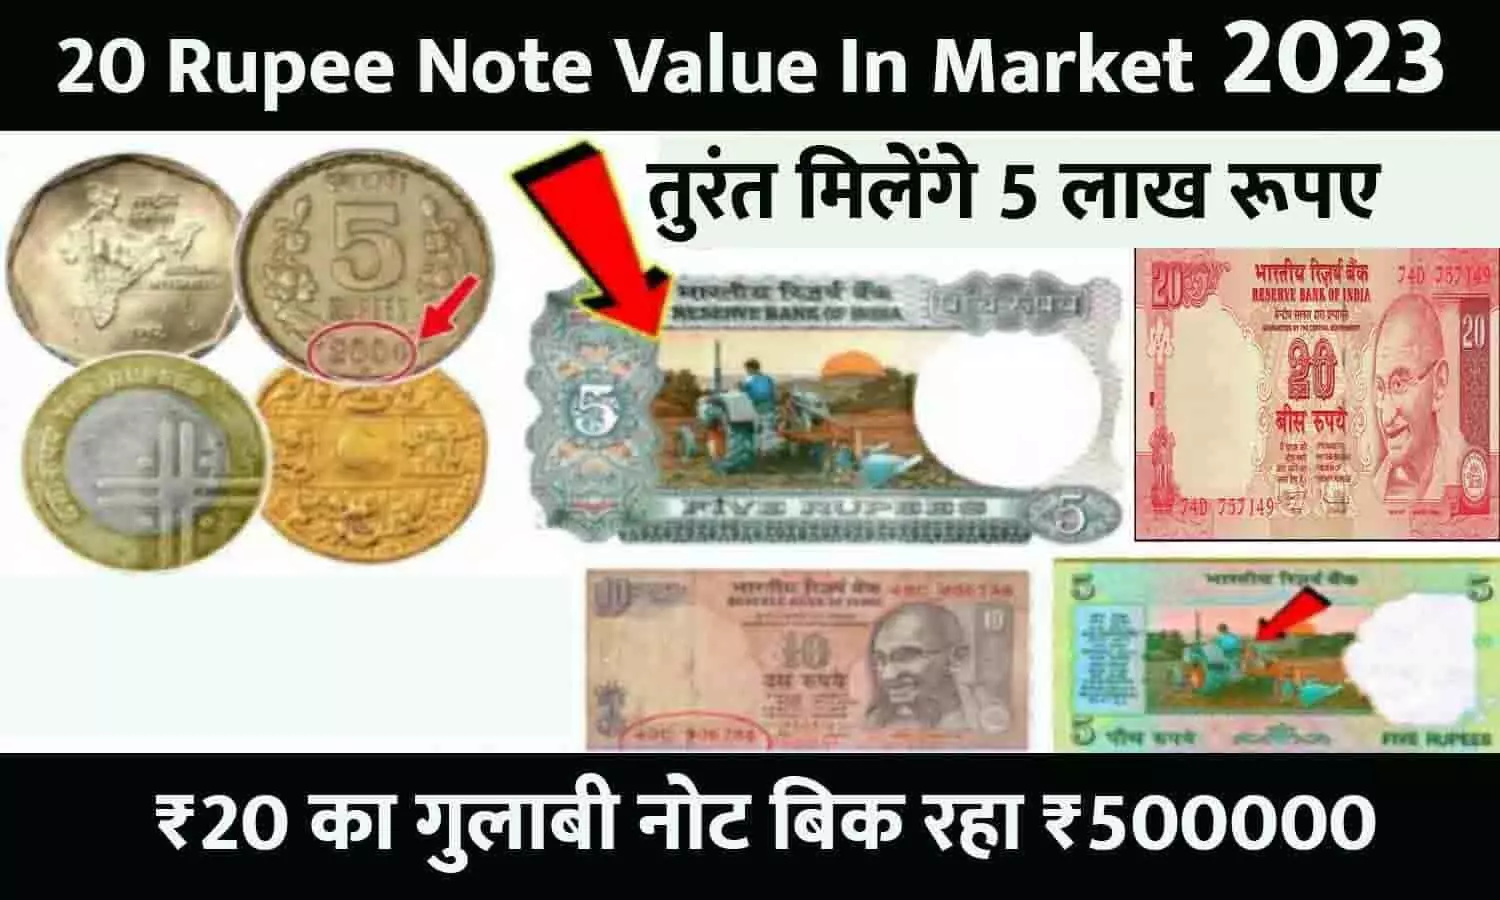 20 Rupee Note Value In Market 2023: ₹20 का गुलाबी नोट बिक रहा ₹500000, Online Market में तुरंत बेचे, फटाफट जाने पूरी Details